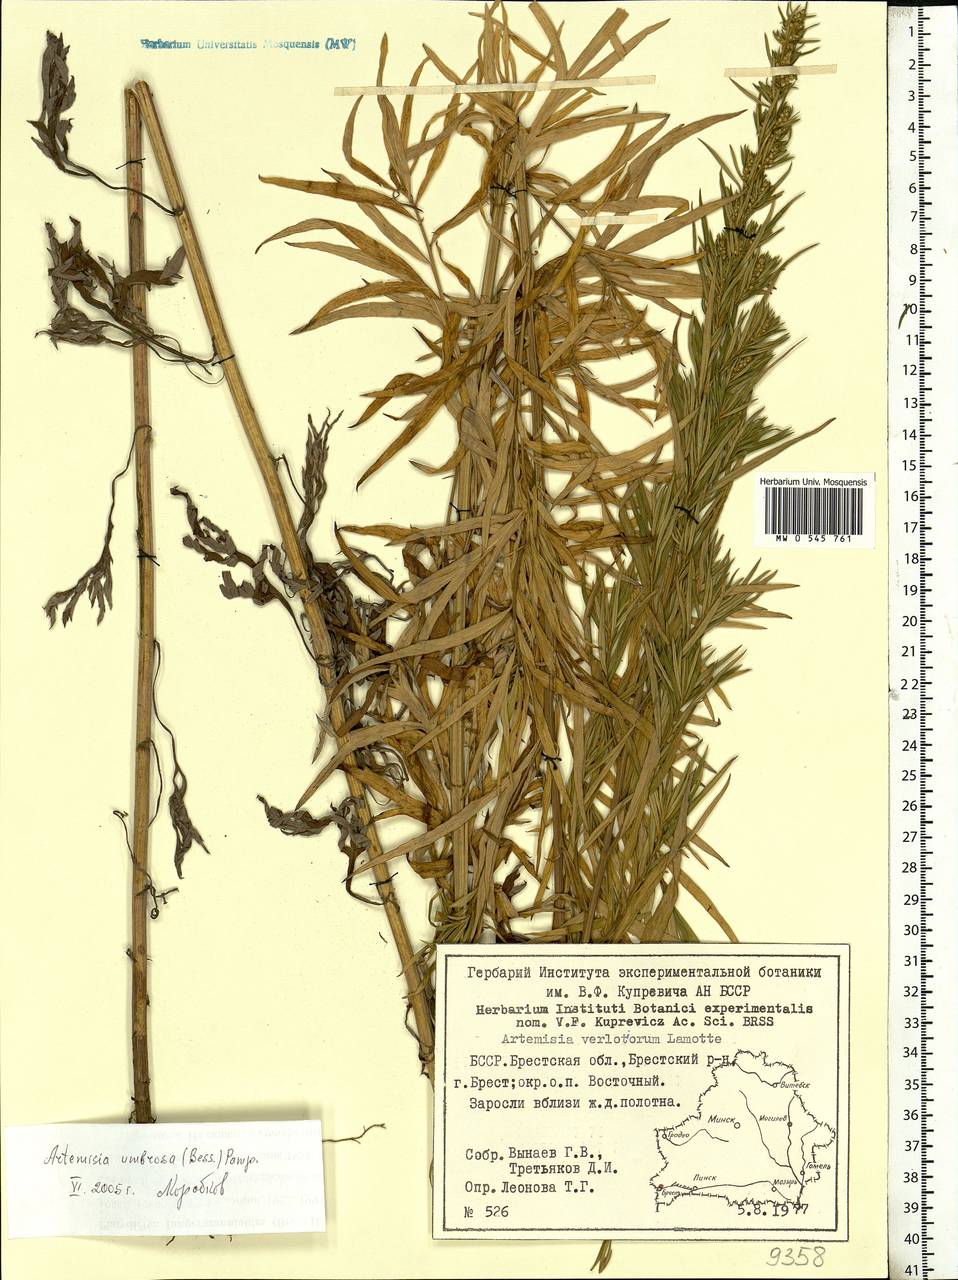 Artemisia dubia Wall. ex Besser, Eastern Europe, Belarus (E3a) (Belarus)